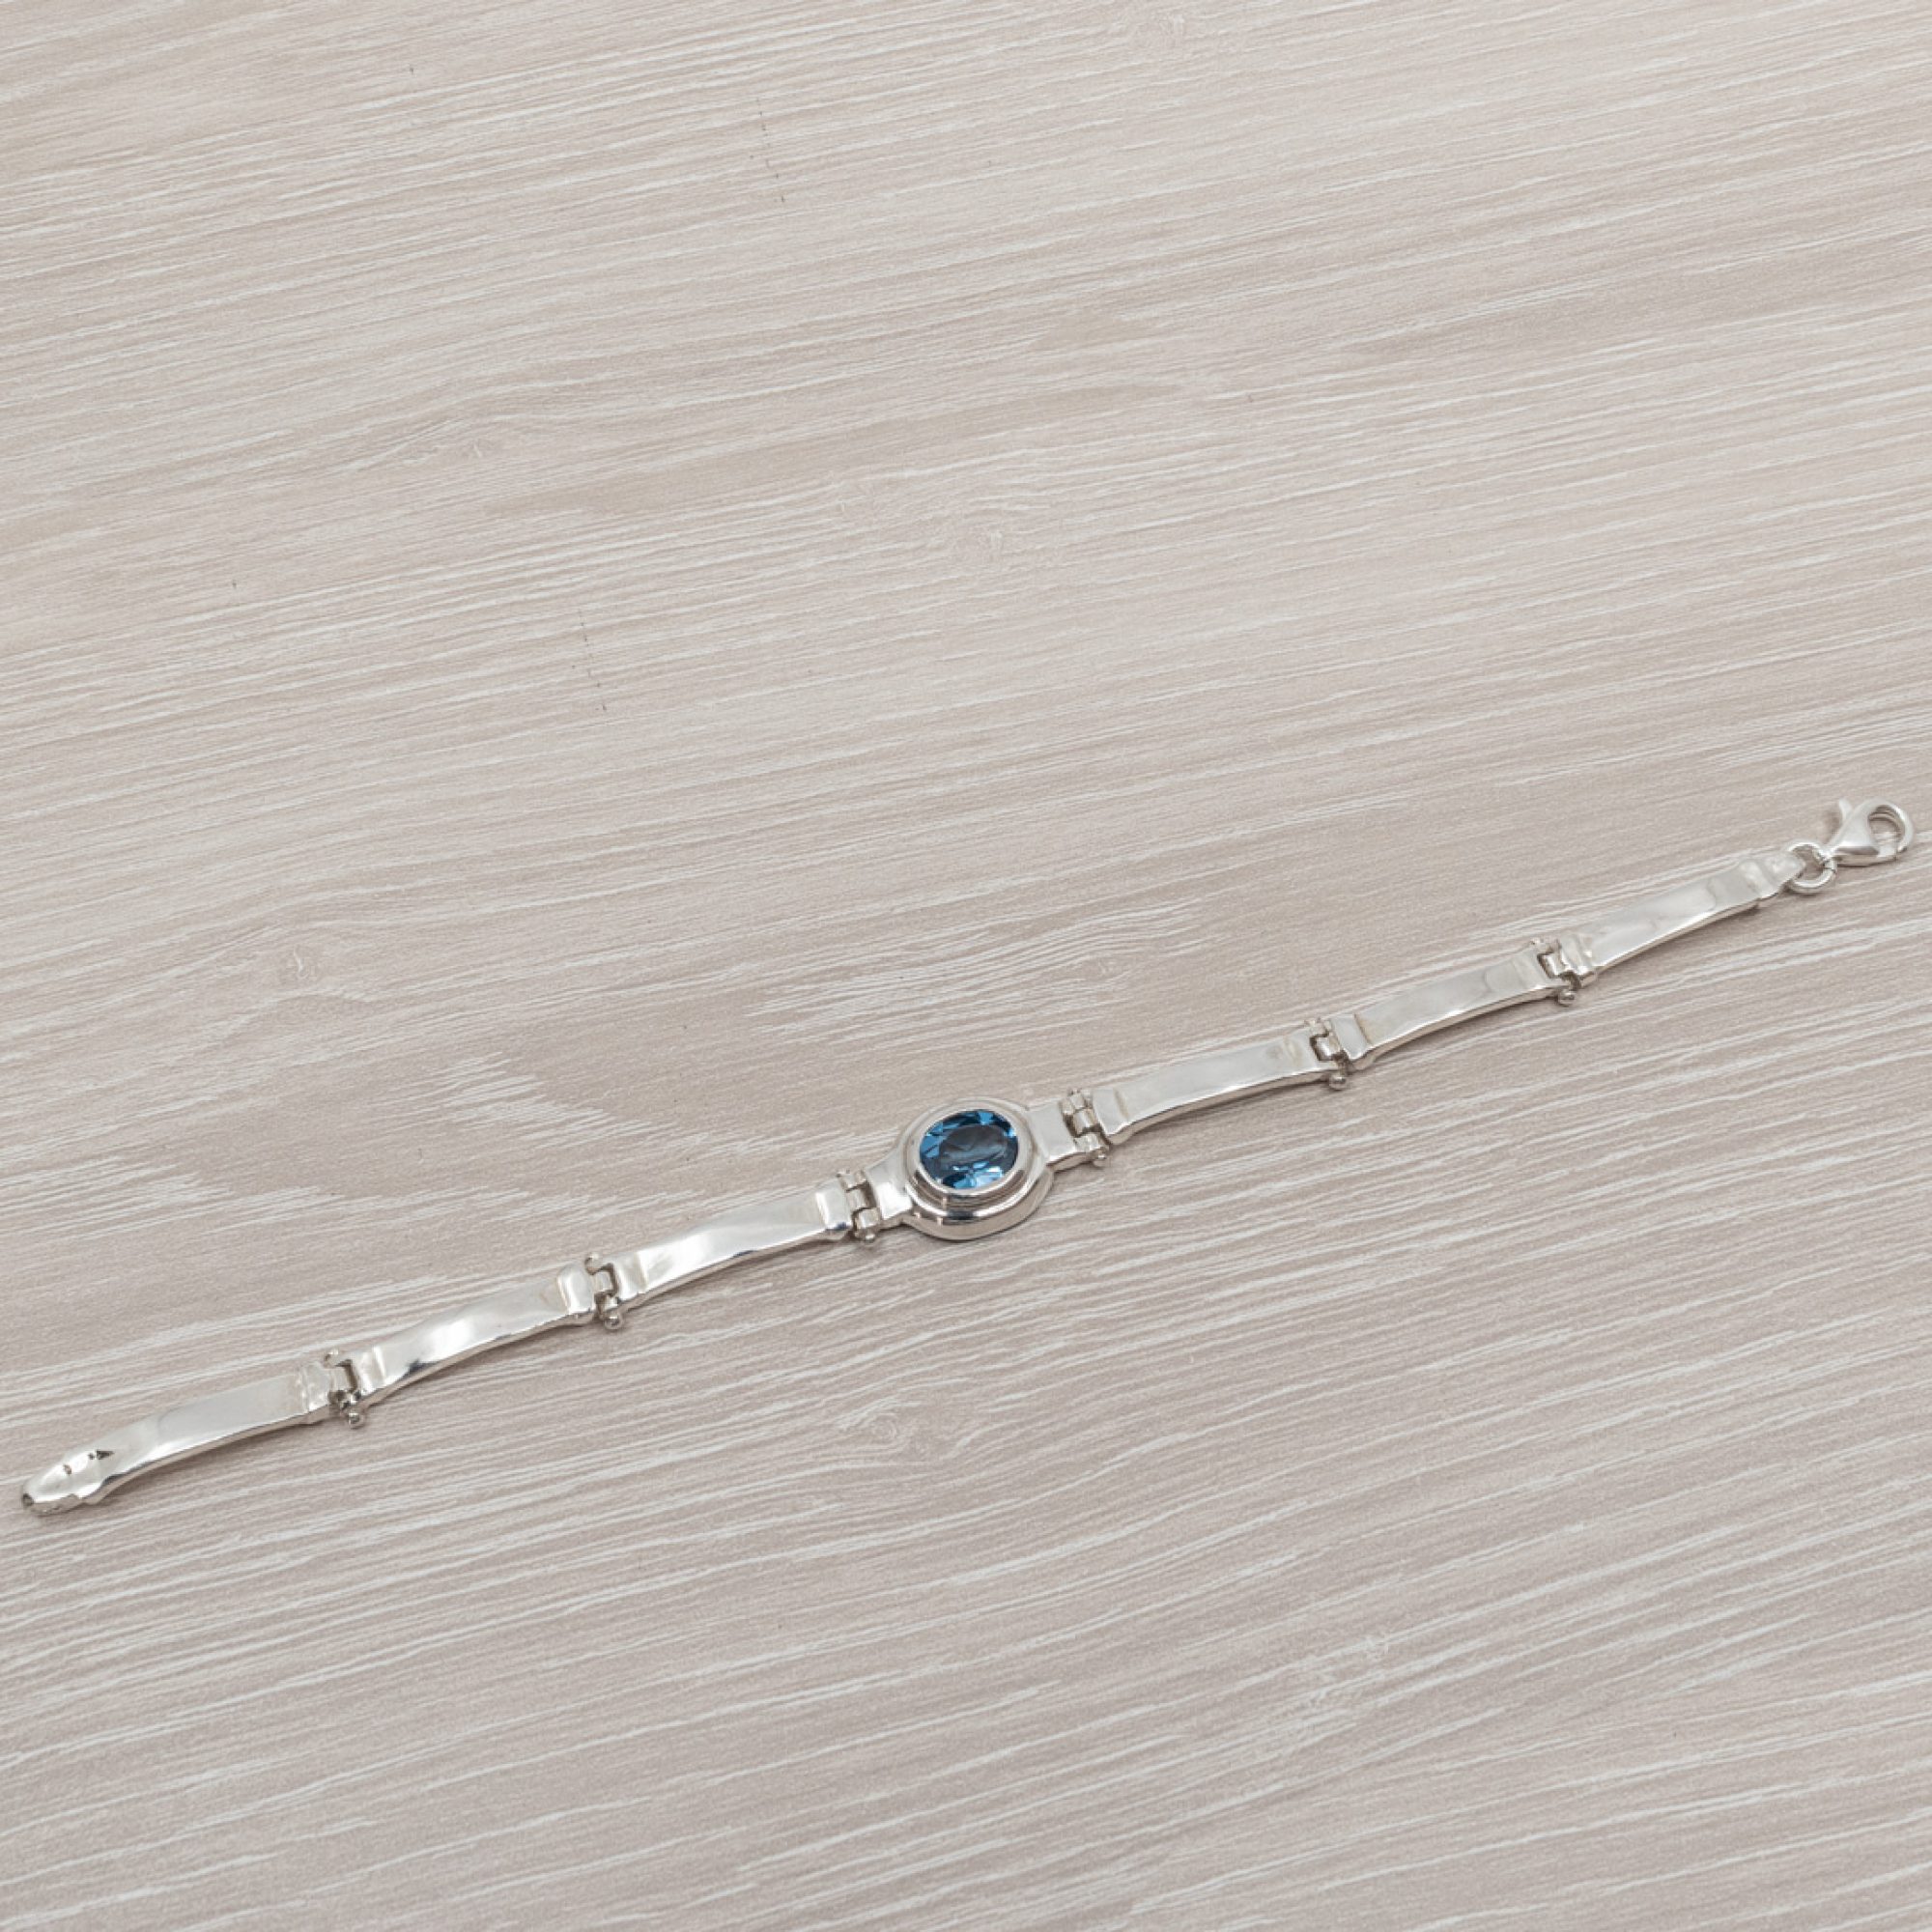 Bracelet with aquamarine stone